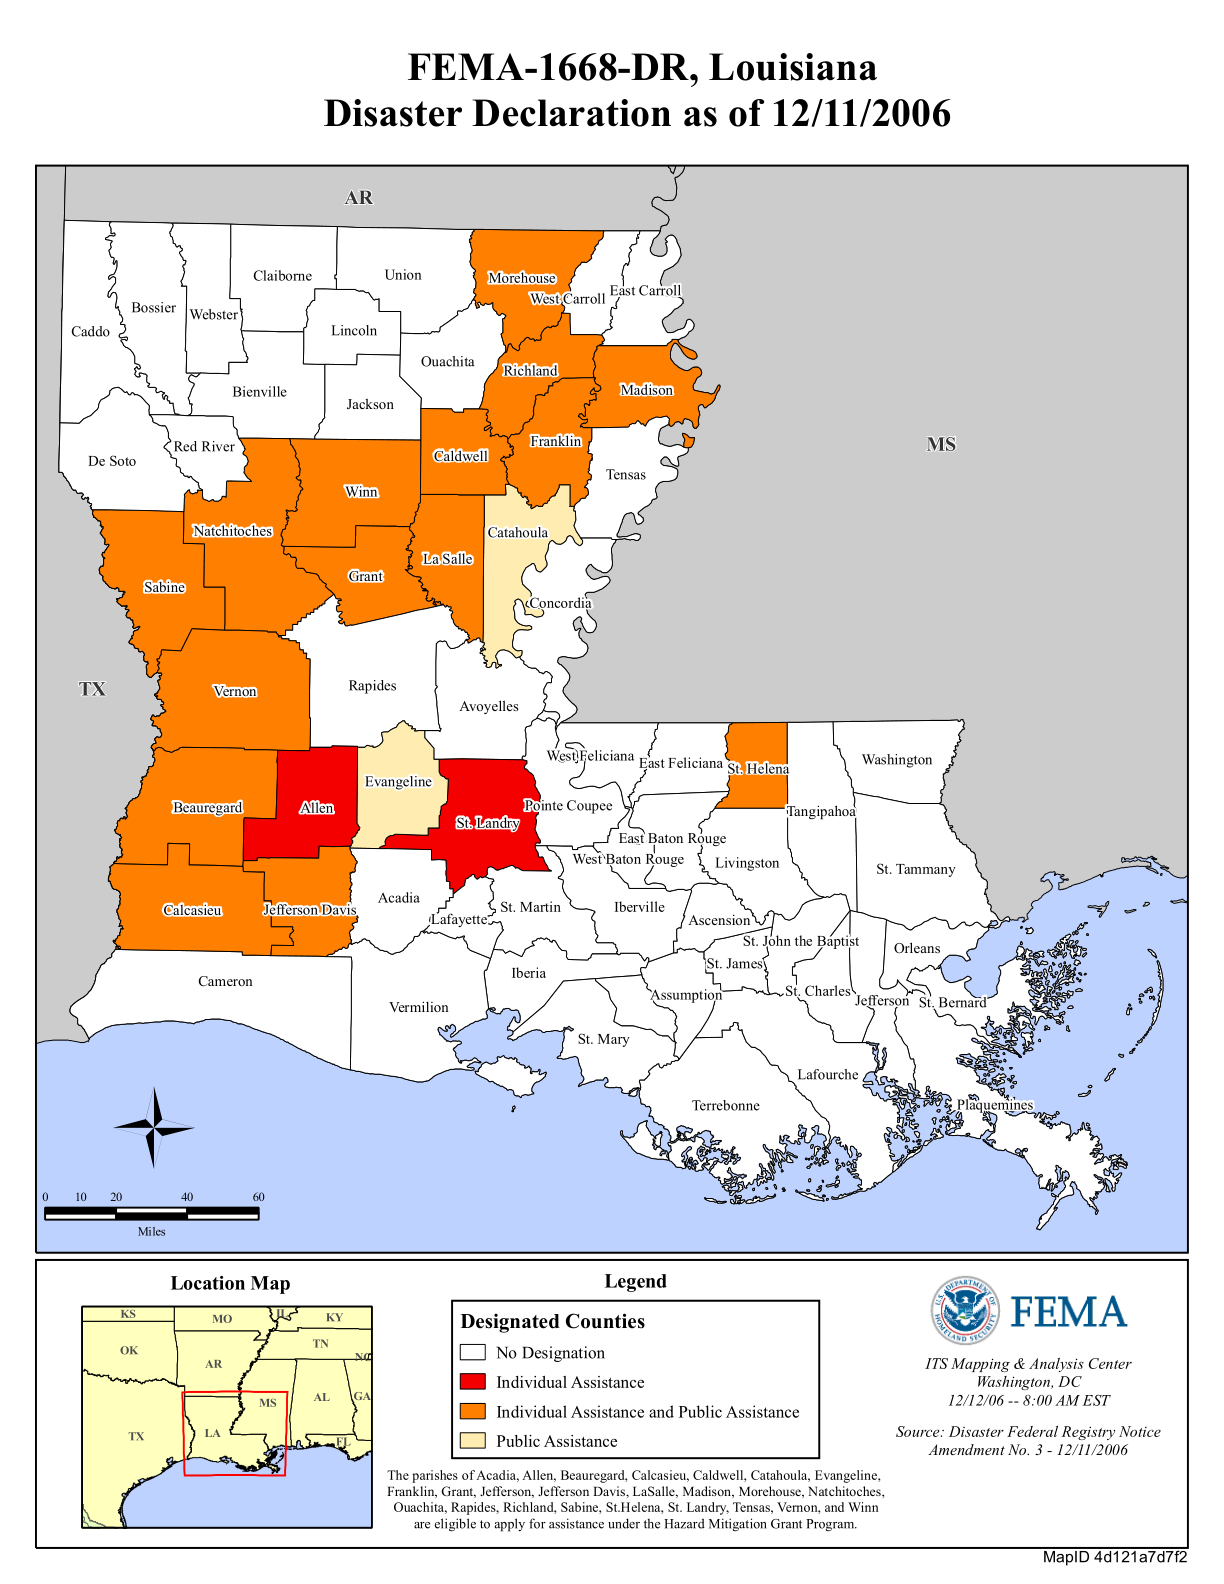 Louisiana Severe Storms And Flooding Dr 1668 Fema Gov